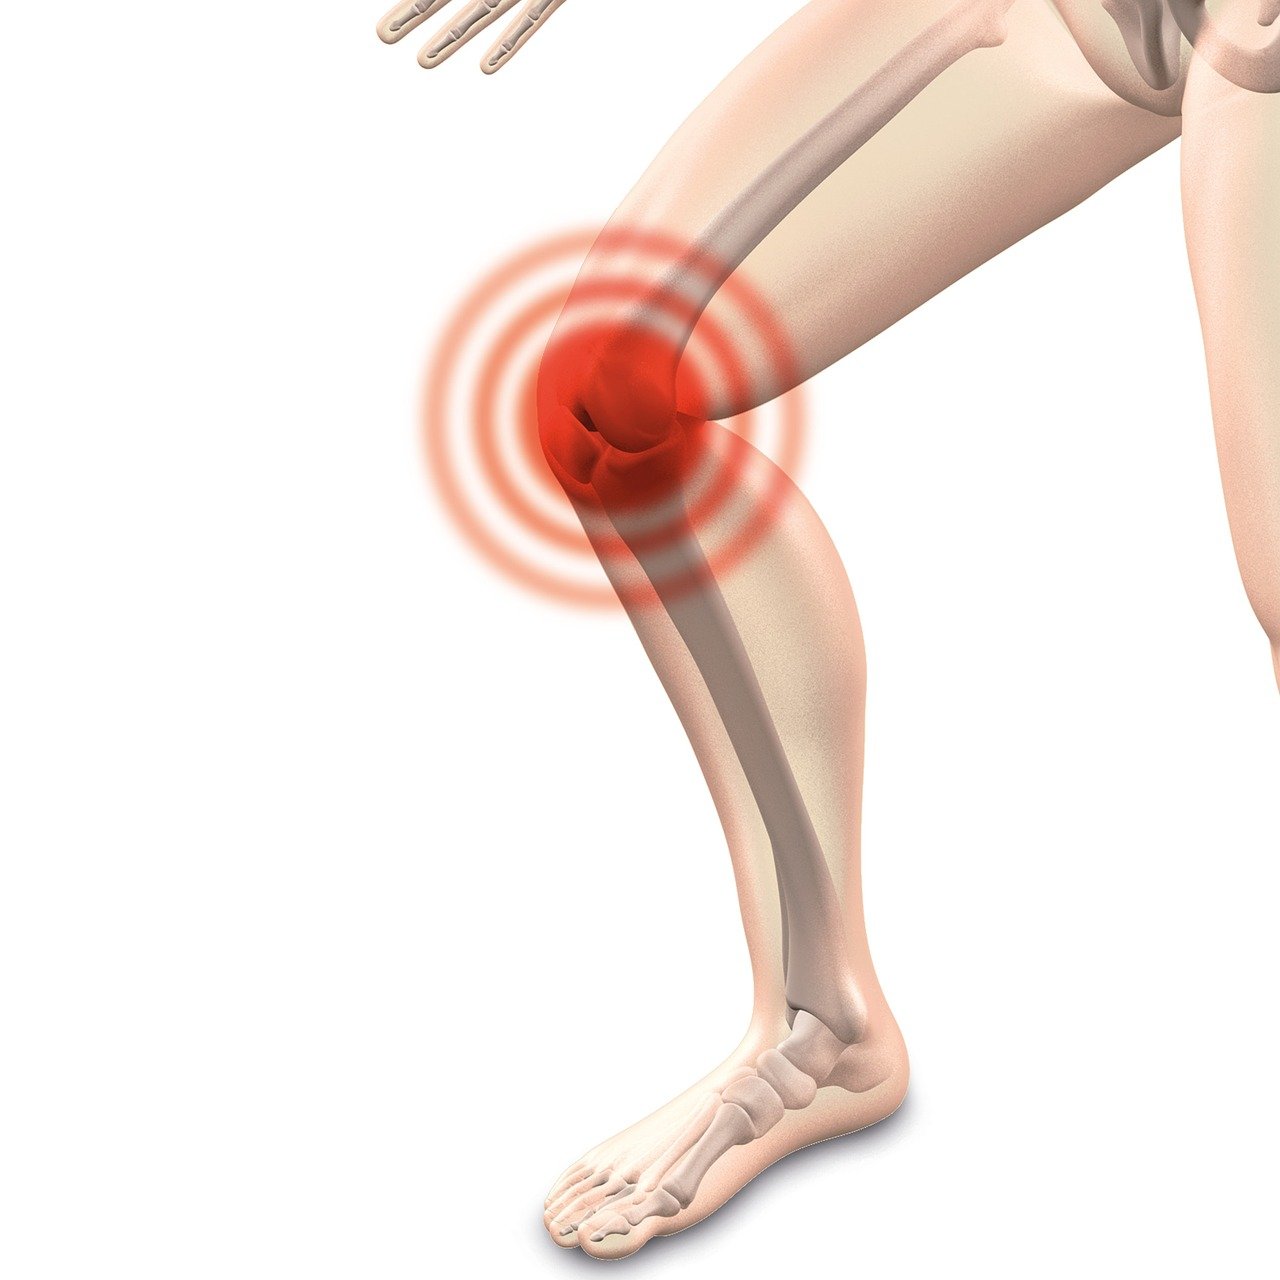 image pour illustrer la douleur au genou